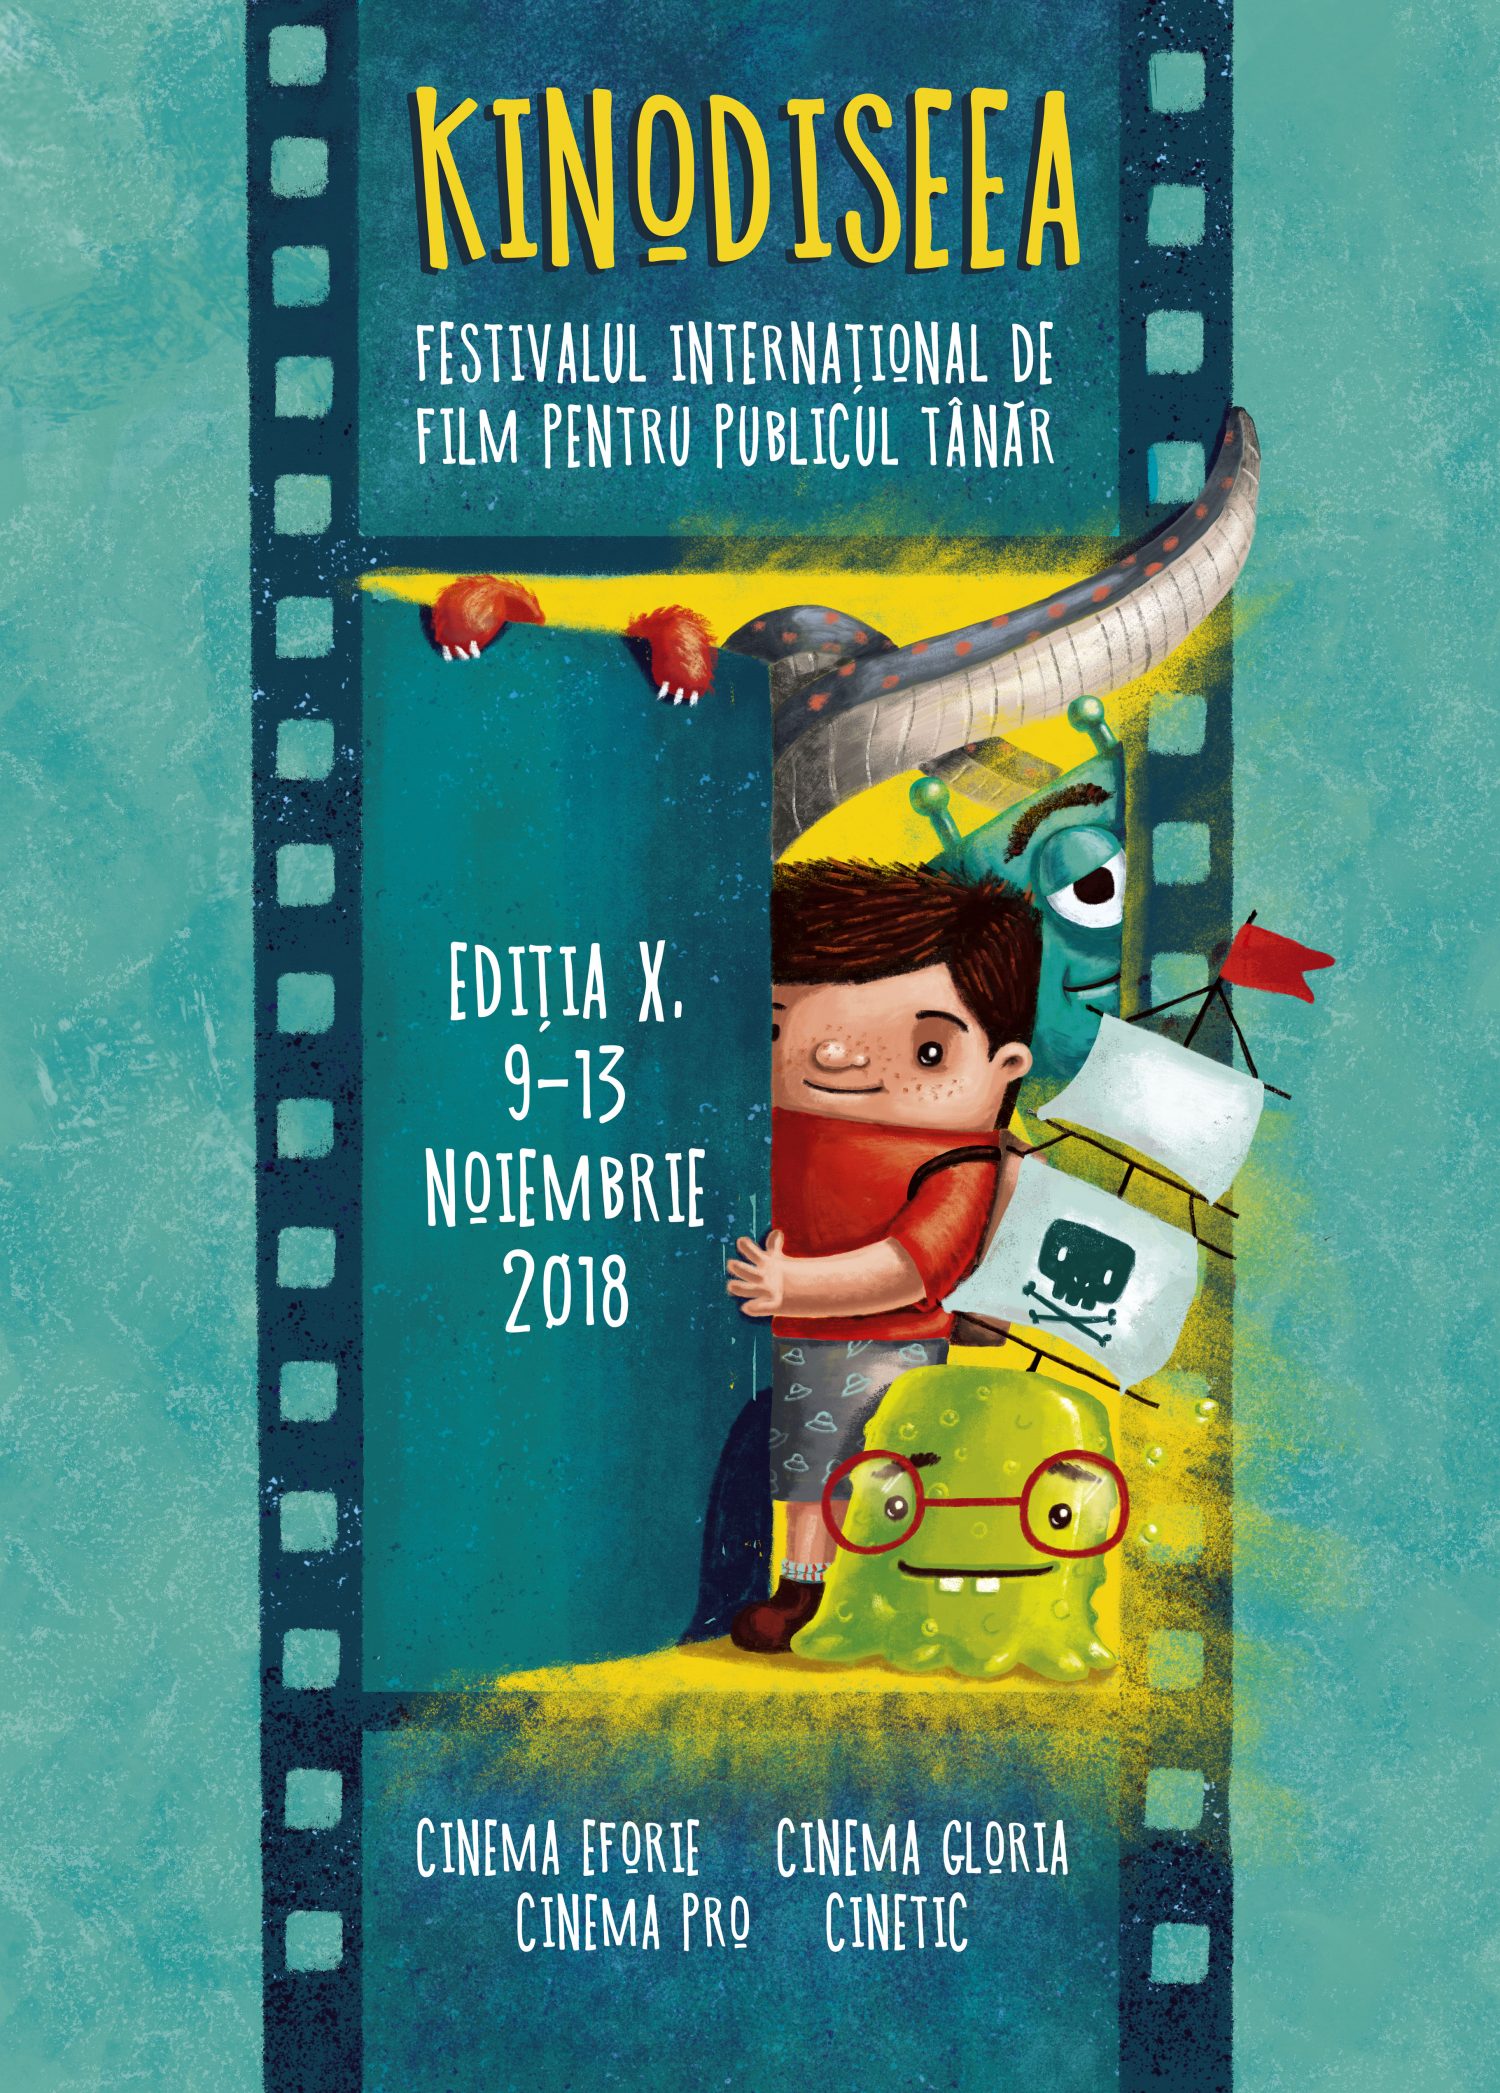 kinodiseea film festival poster illustration andra badea adventure movie children cuteoshenii